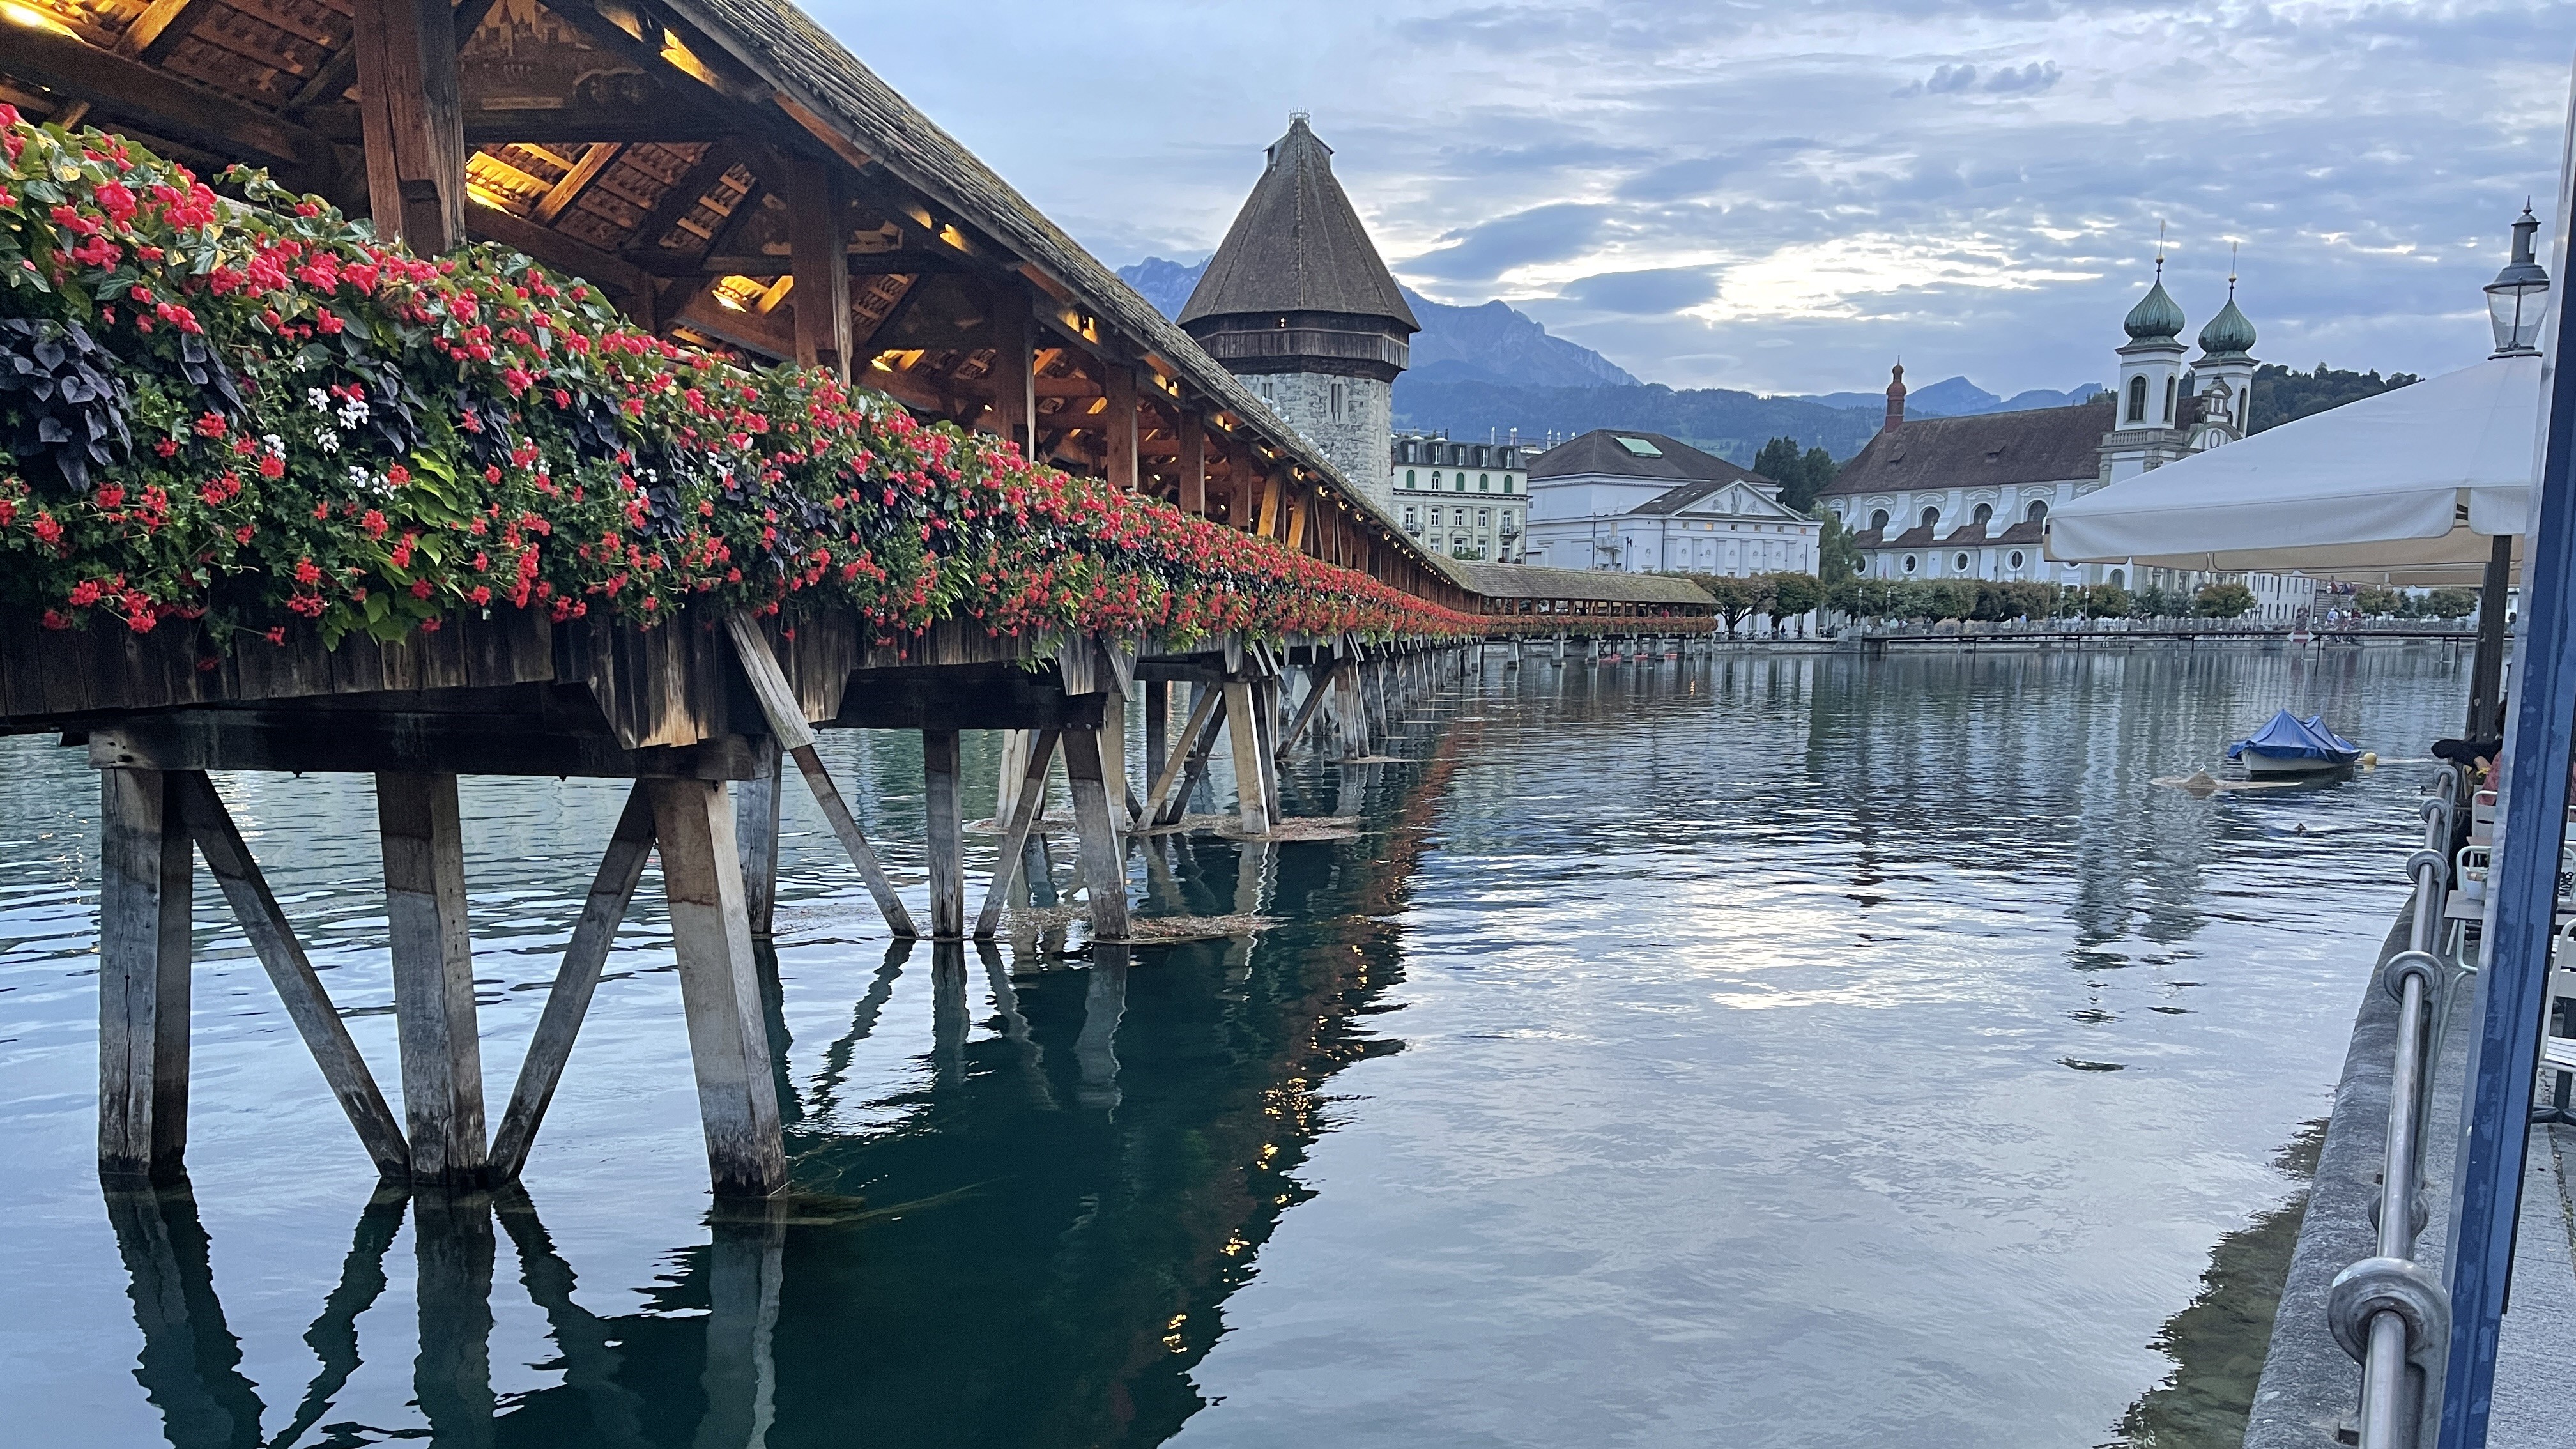 Brdiges - Senior Trip to Lucerne